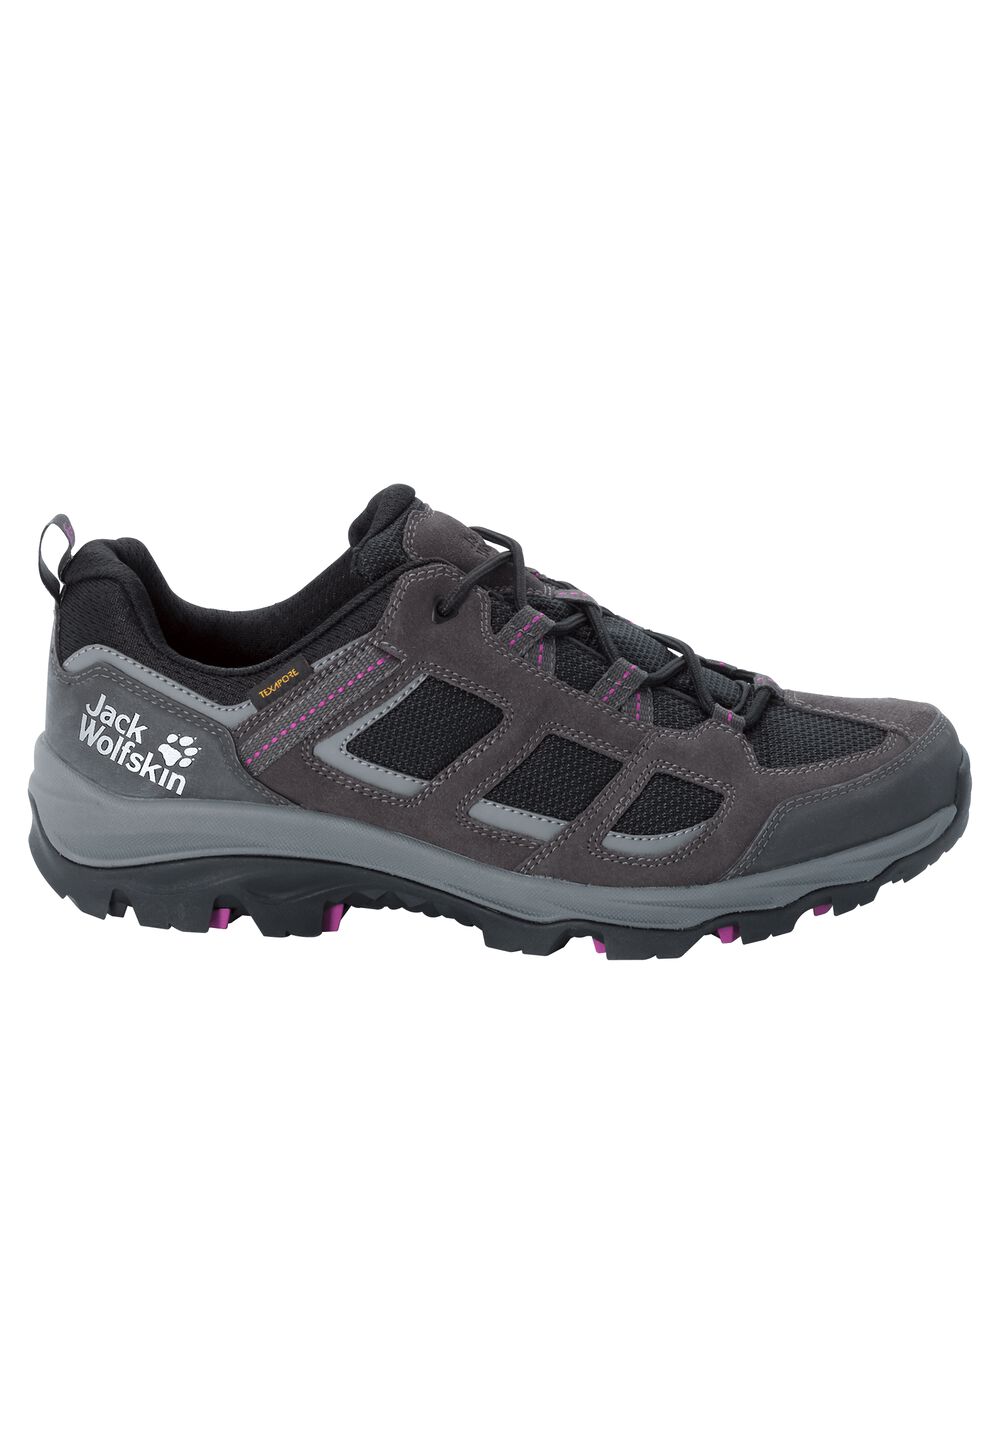 Chaussures de randonnée imperméables femmes Vojo 3 Texapore Low Women 8 gris dark steel / purple